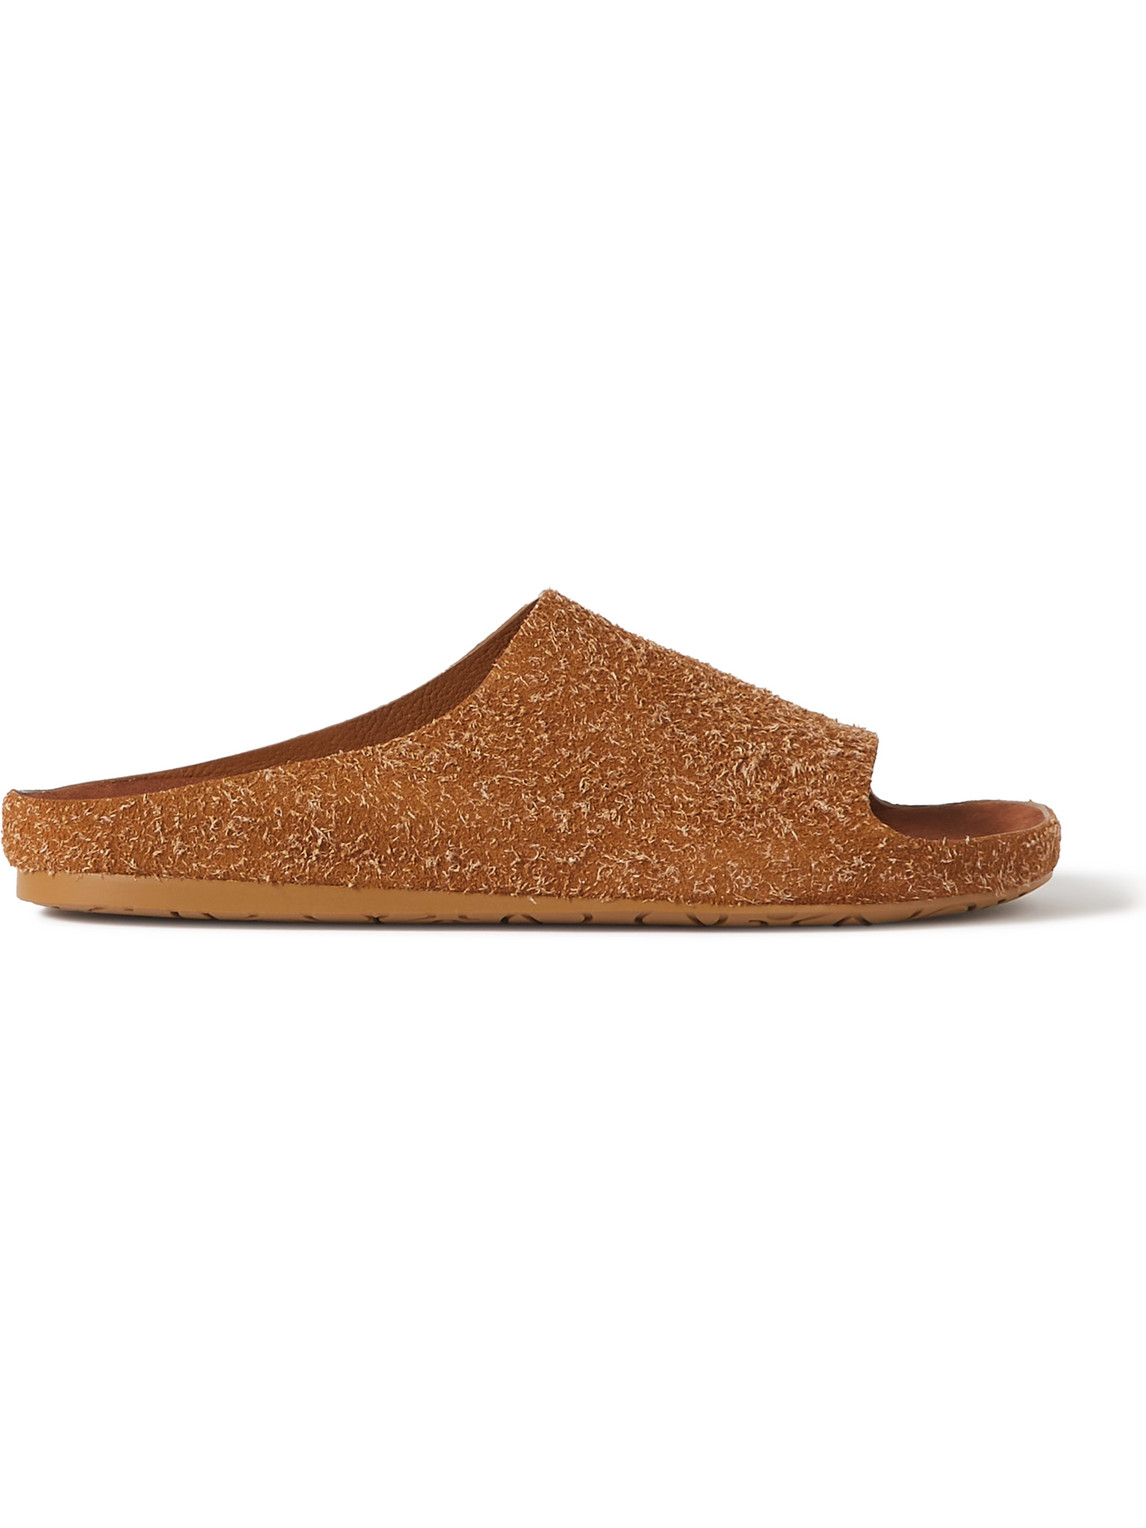 Loewe Brushed Suede Sandals In Brown